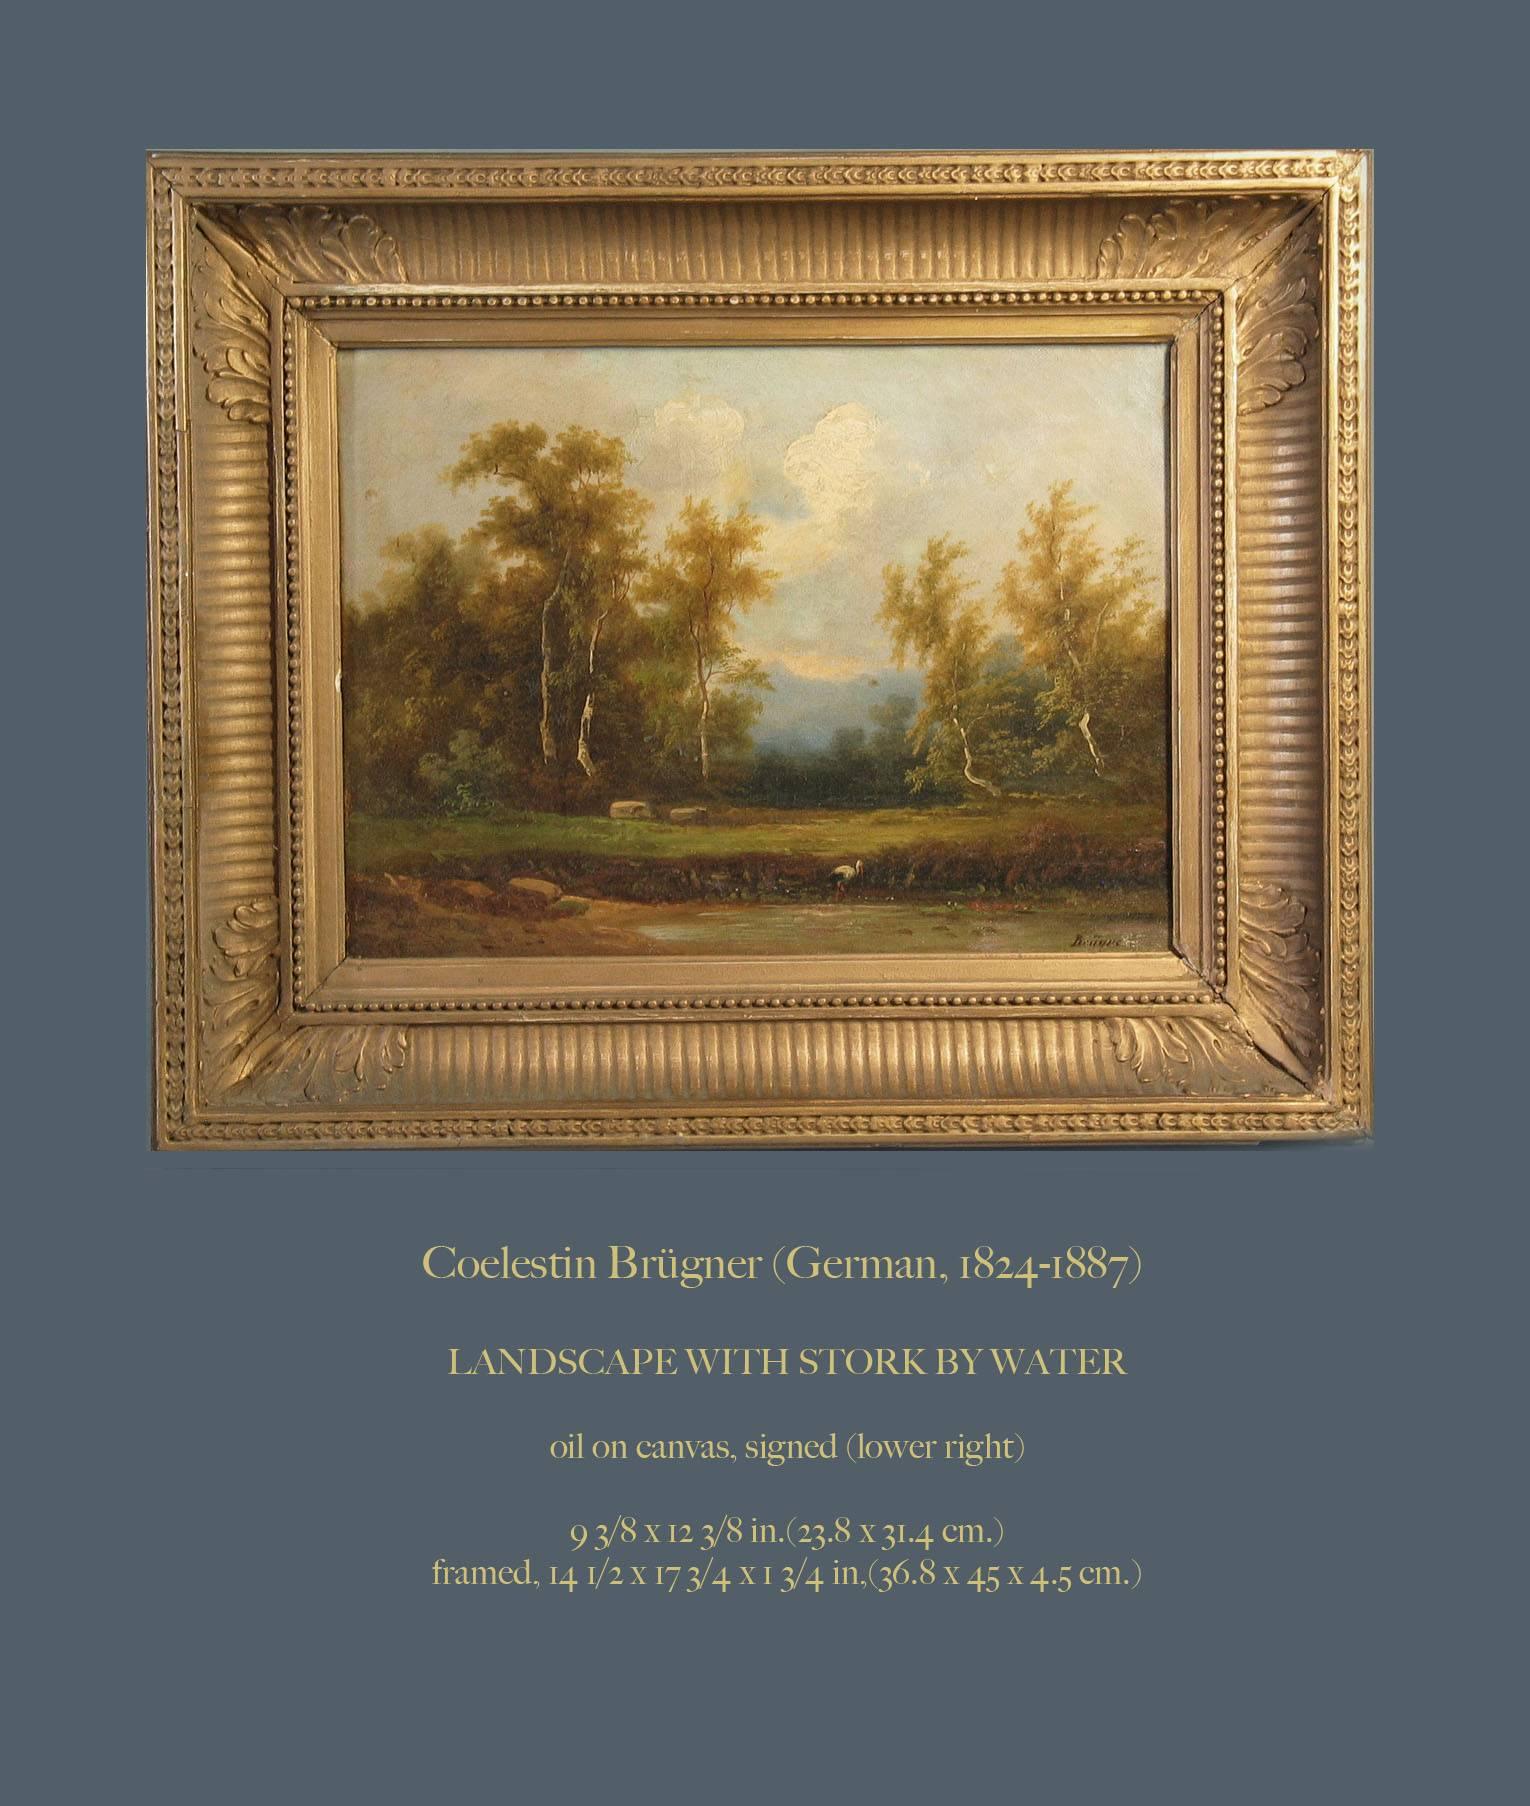 Coelestin Brugner (Allemand 1824-1887), un paysage avec une cigogne au bord de l'eau, huile sur toile, signé (en bas à droite), La peinture mesure 9 3/8